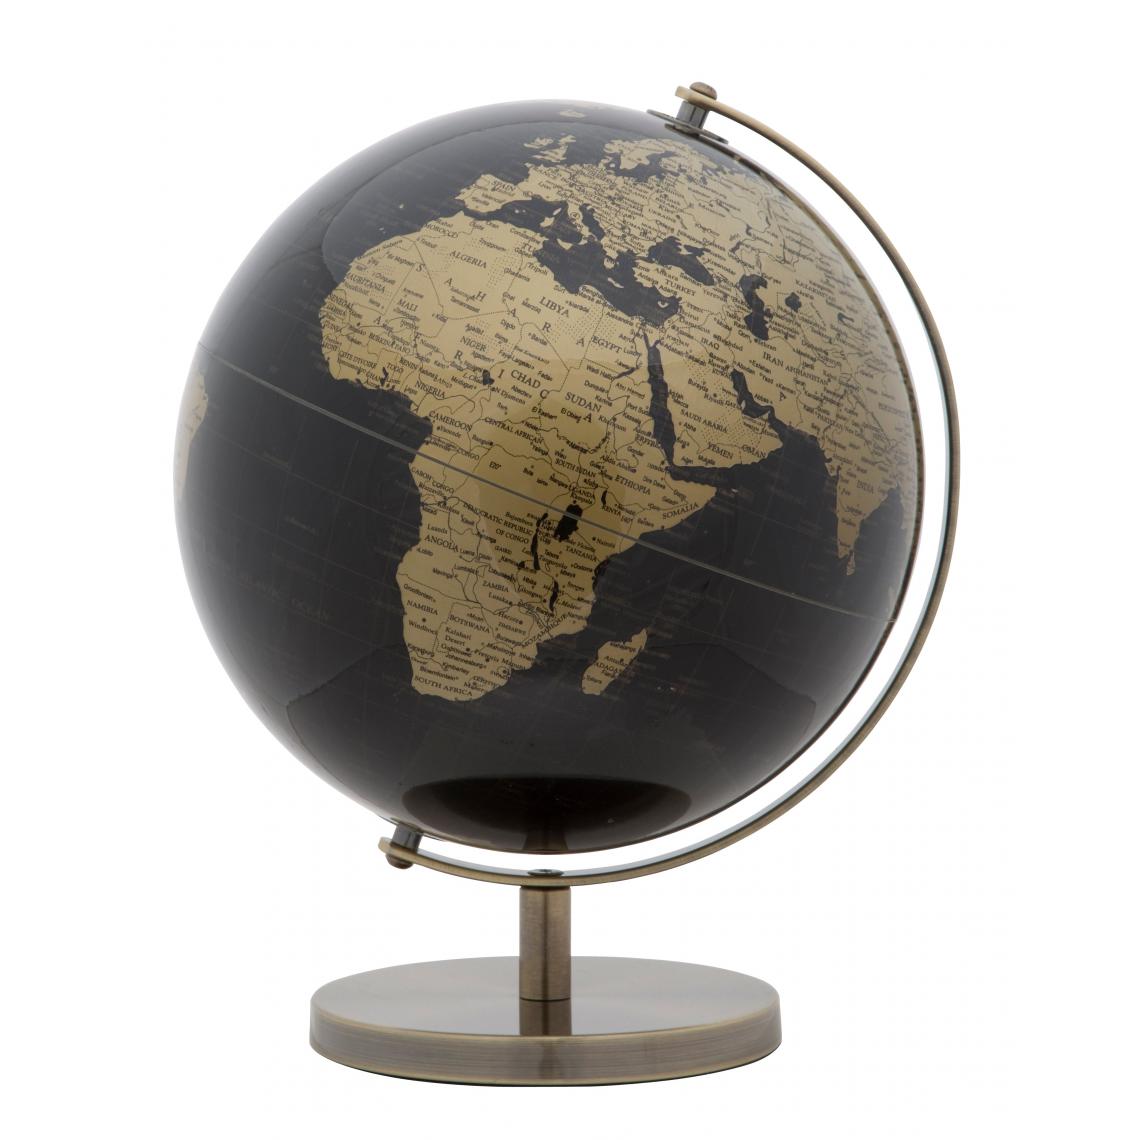 Alter - Globe décoratif, en matière plastique, avec base en métal, couleur noire, Mesure 25 x 34 x 25 cm - Objets déco